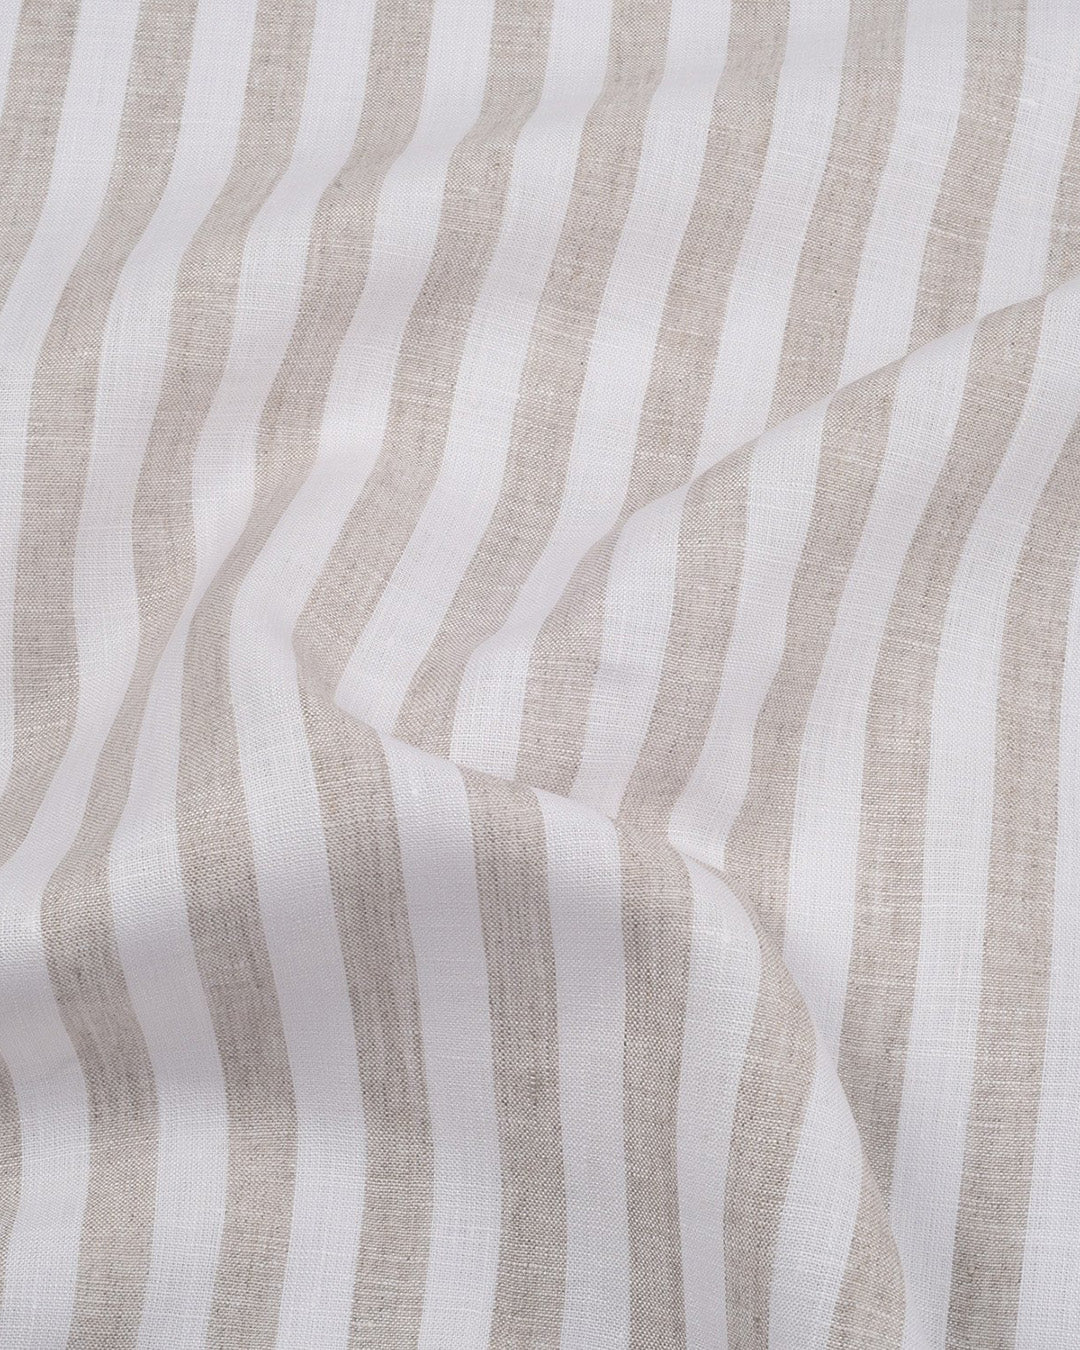 Sand White Awning Stripes Linen